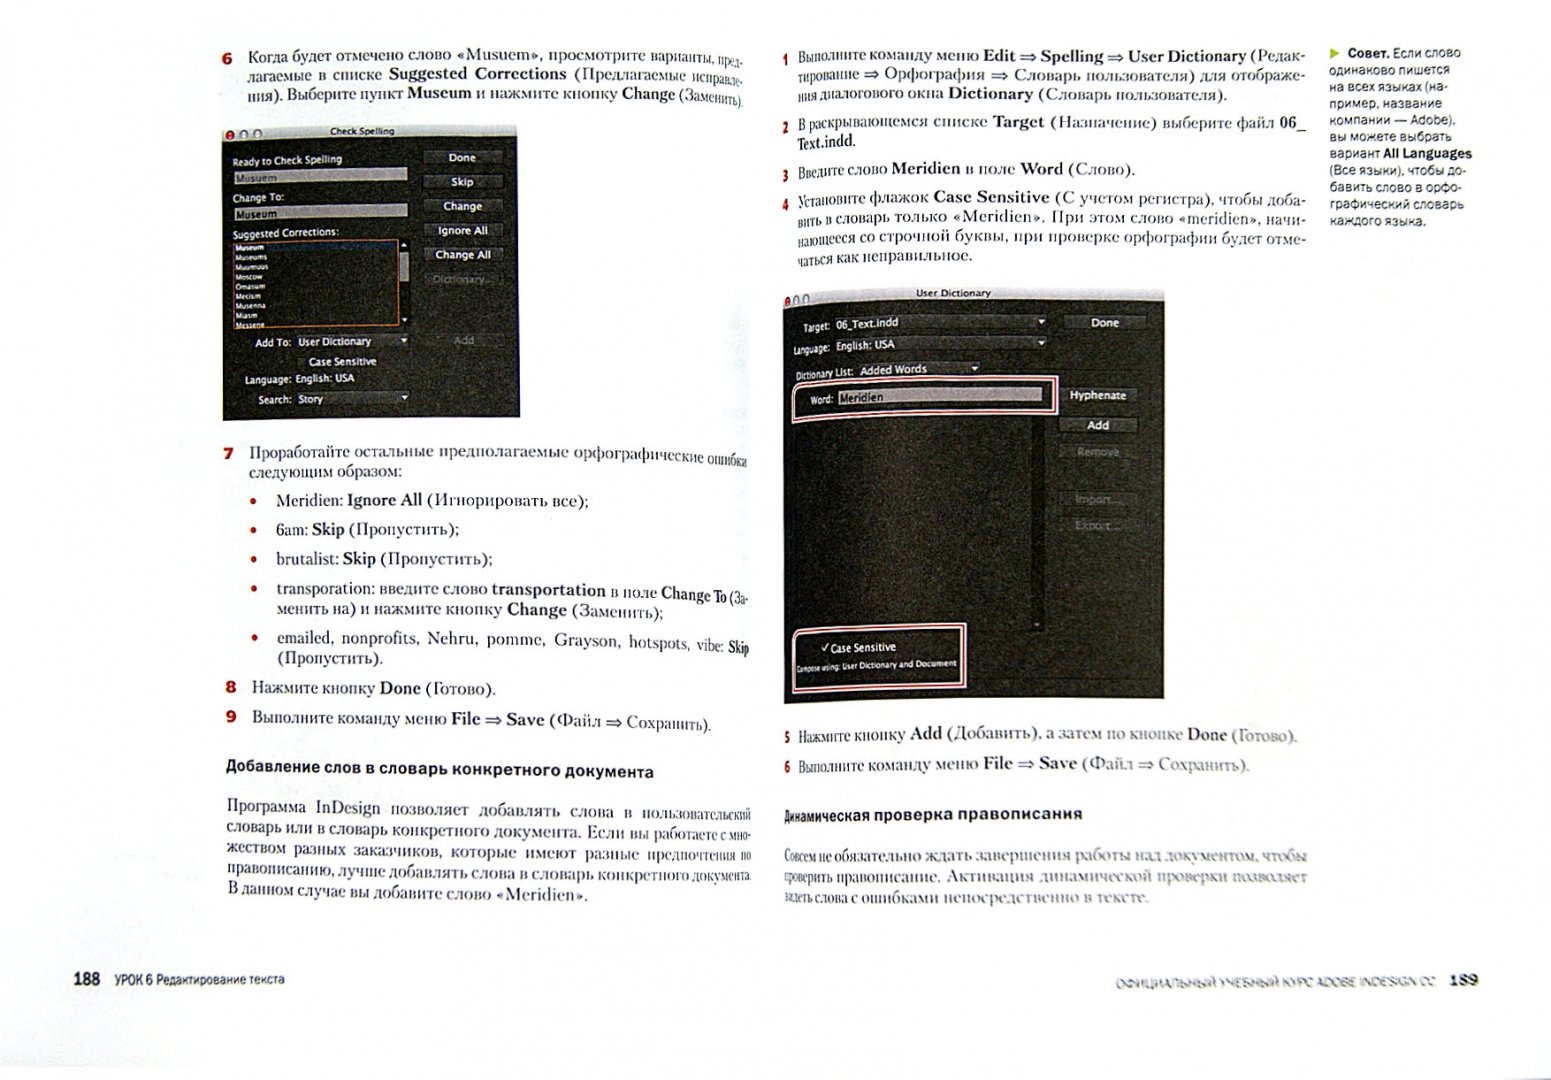 Иллюстрация 1 из 5 для Adobe InDesign CC. Официальный учебный курс (+CD) - Энтон, Круз | Лабиринт - книги. Источник: Лабиринт